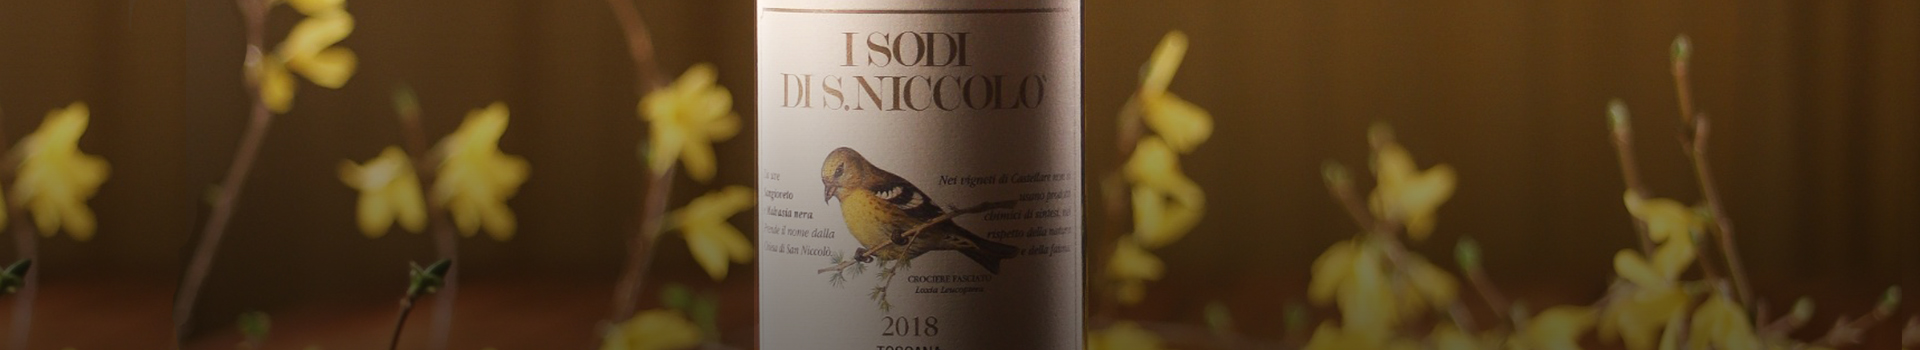 I SODI DI S. NICCOLÒ 2018 WILL BE DISTRIBUTED BY LA PLACE DE BORDEAUX